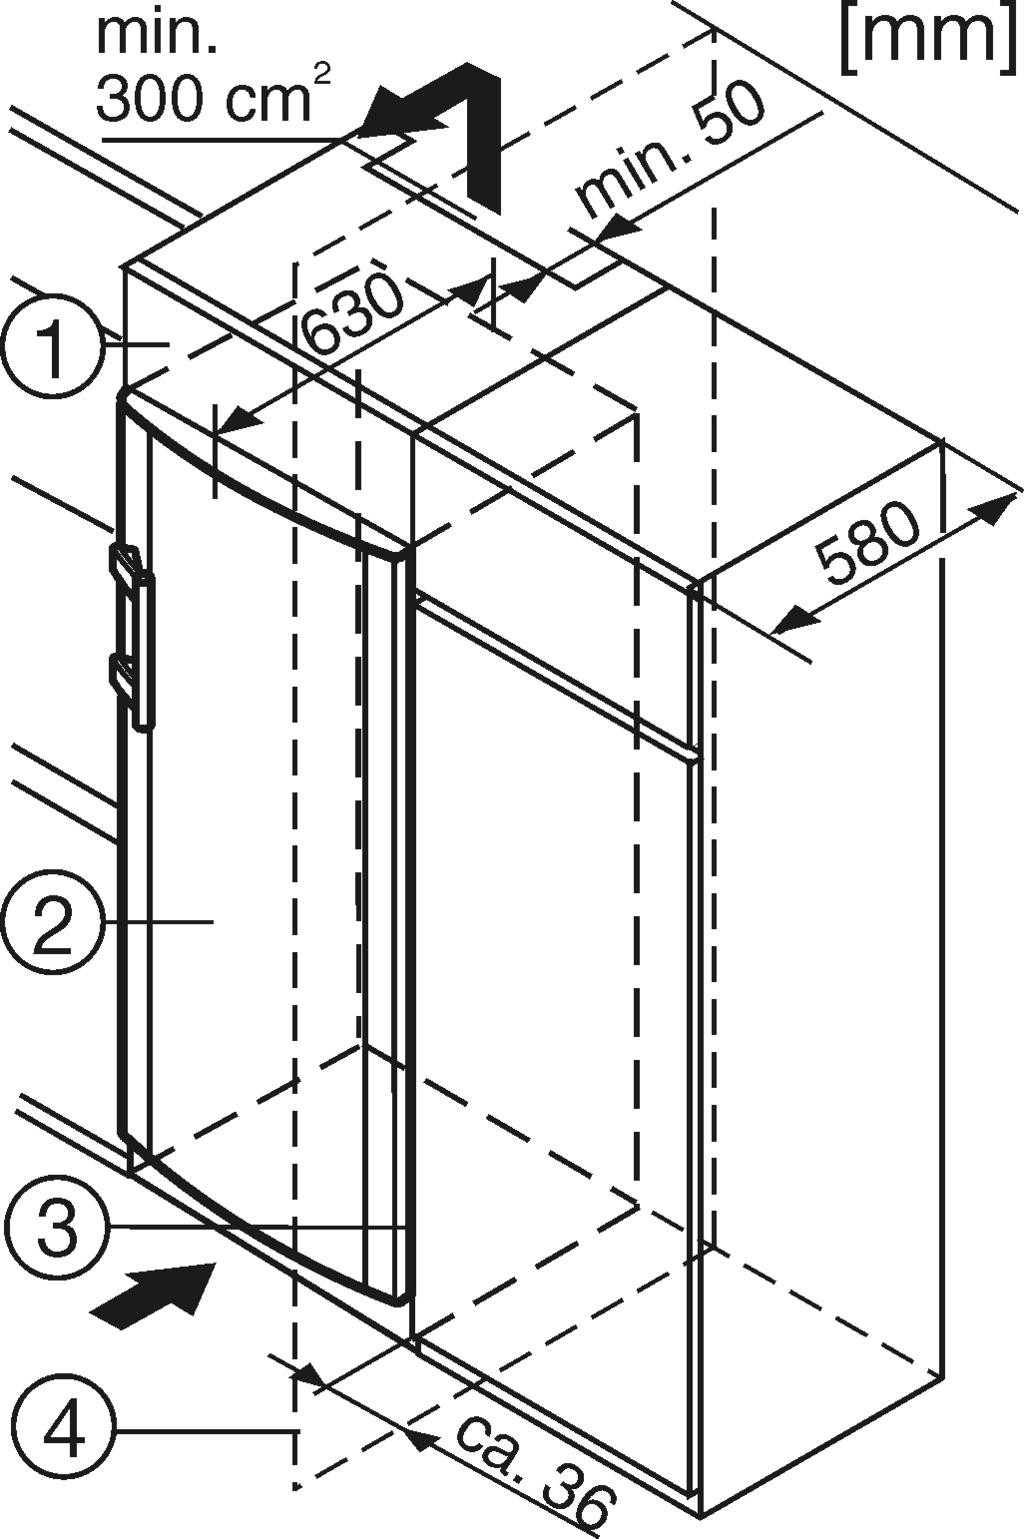 13 (4) uppifrån så att fyrkanten sitter i fördjupningen. u Sätt på och haka itäckbrickan Fig. 13 (2). w Kontrollera att täckbrickan sitter rätt så att dörren stänger ordentligt och bulten är säkrad.